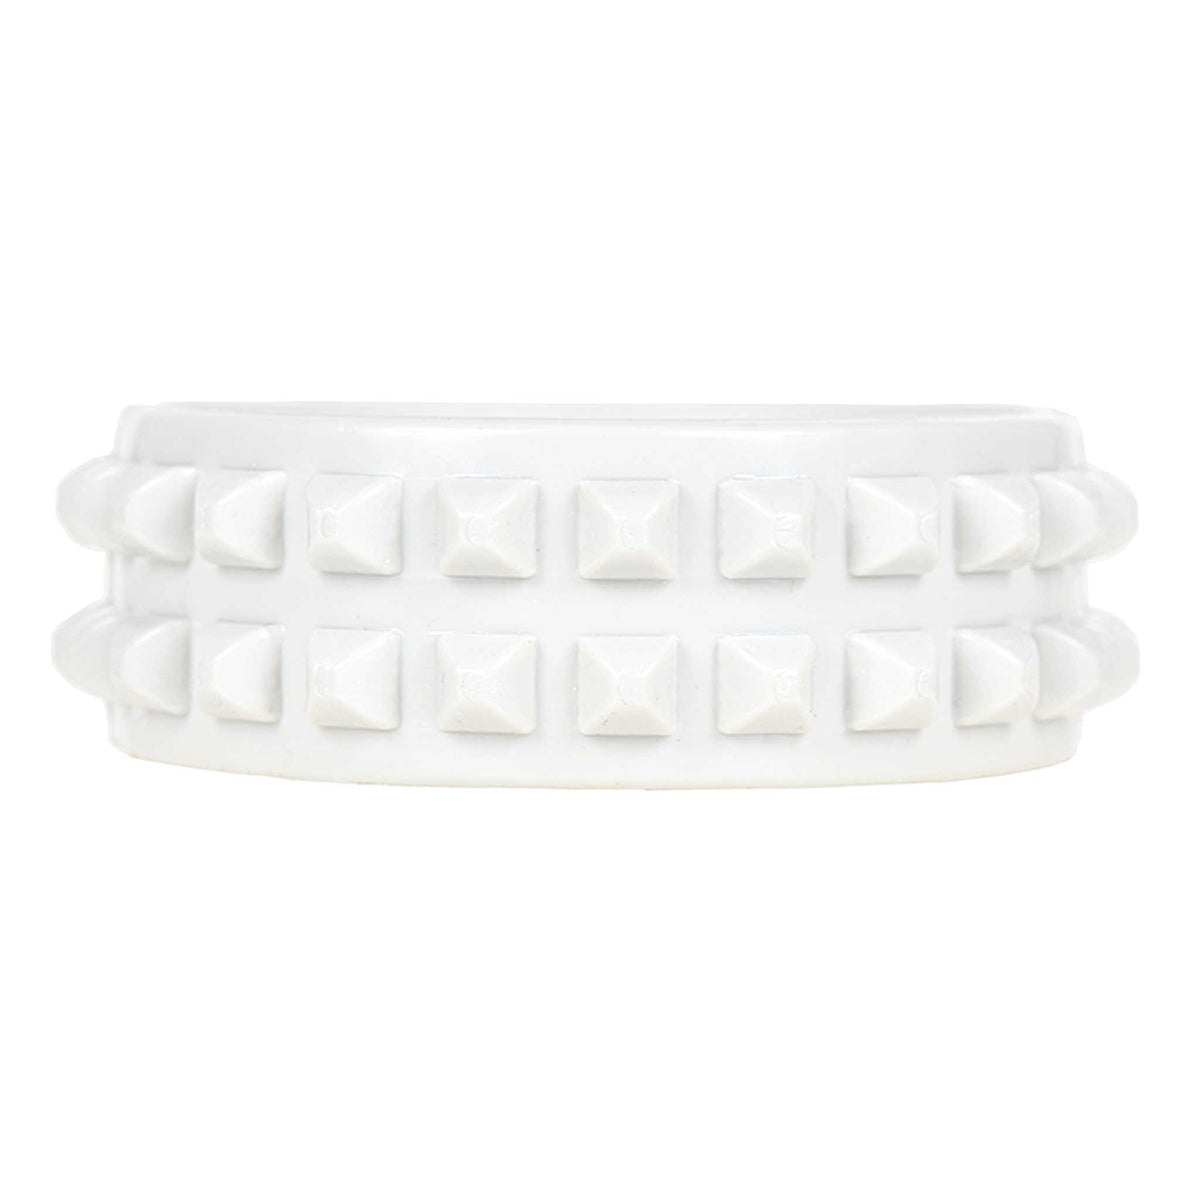 White jelly bracelets